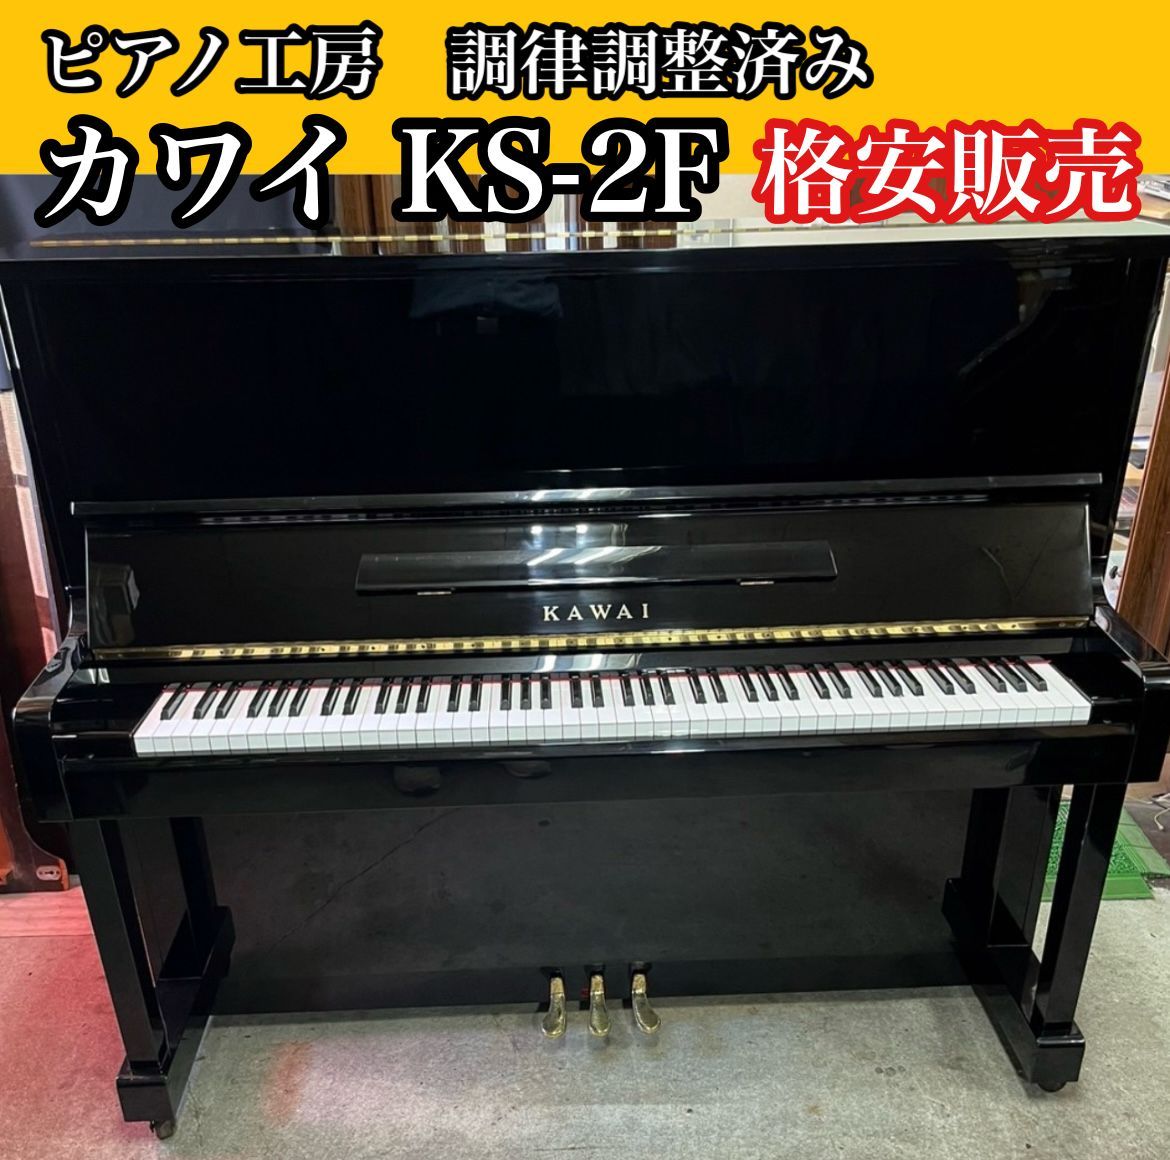 ピアノ調律師の店】アップライトピアノ カワイ KAWAI KS-2F 中古ピアノ 